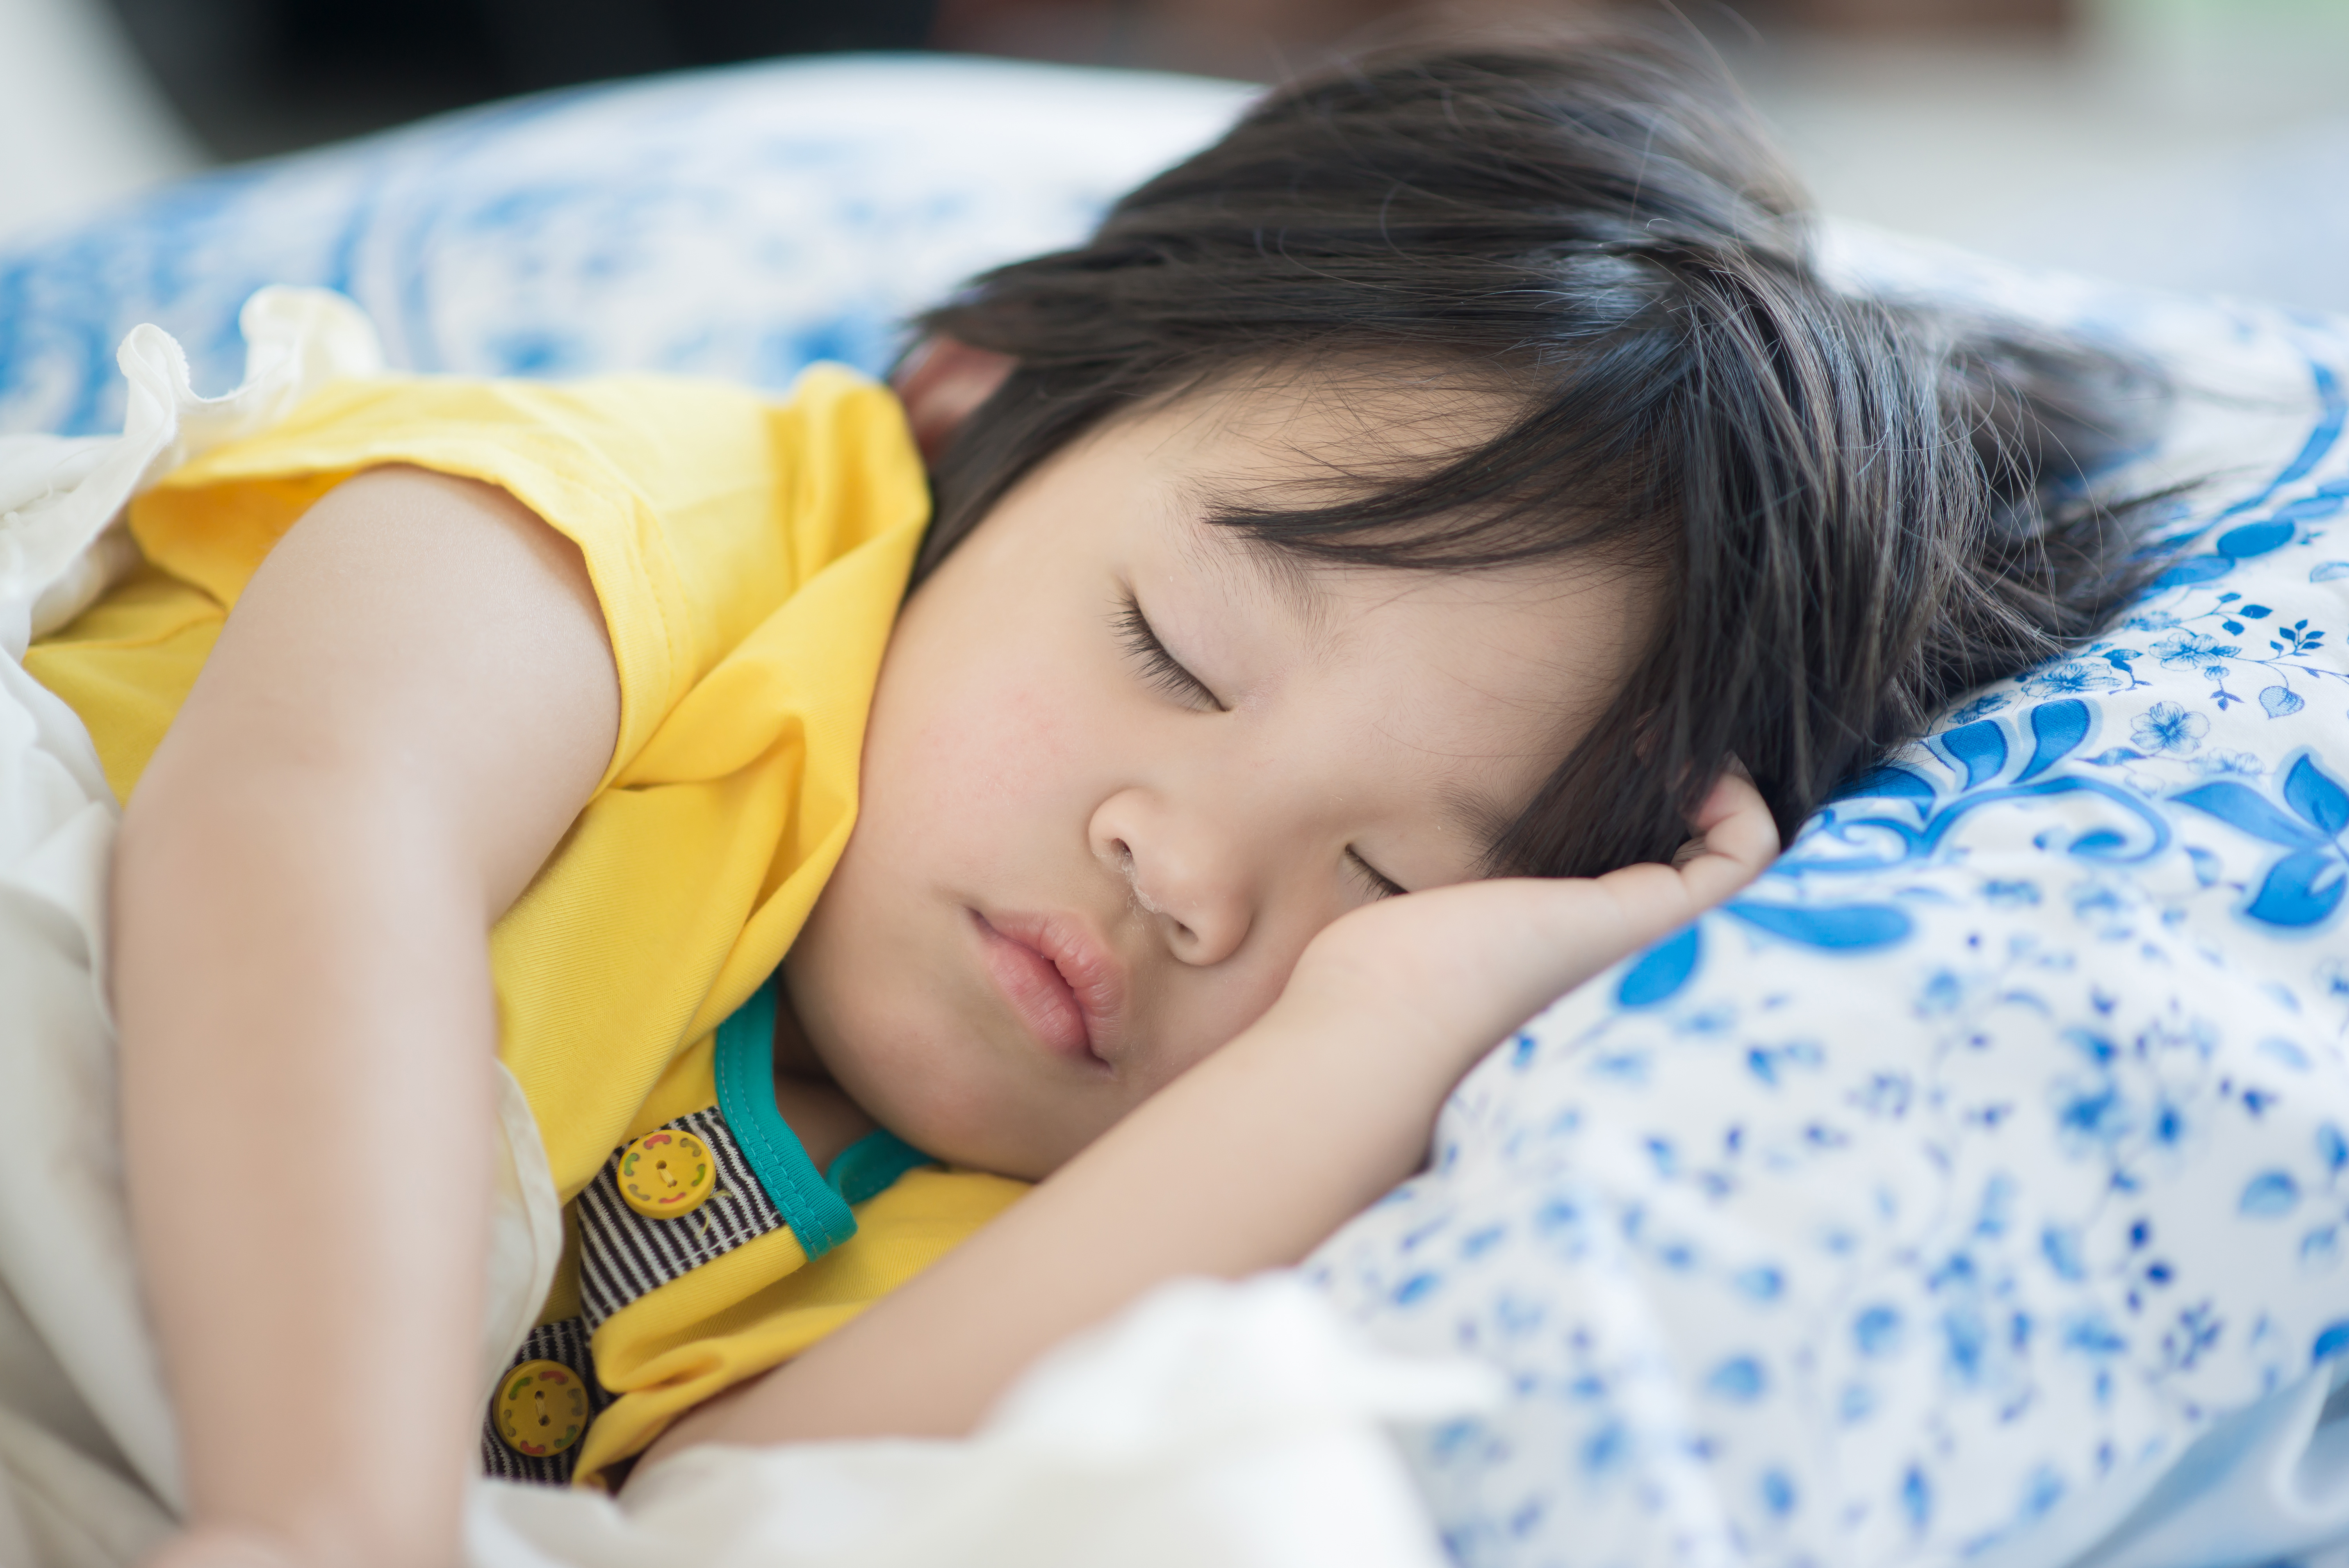 親子教養,孩子賴床,規律作息,睡眠習慣